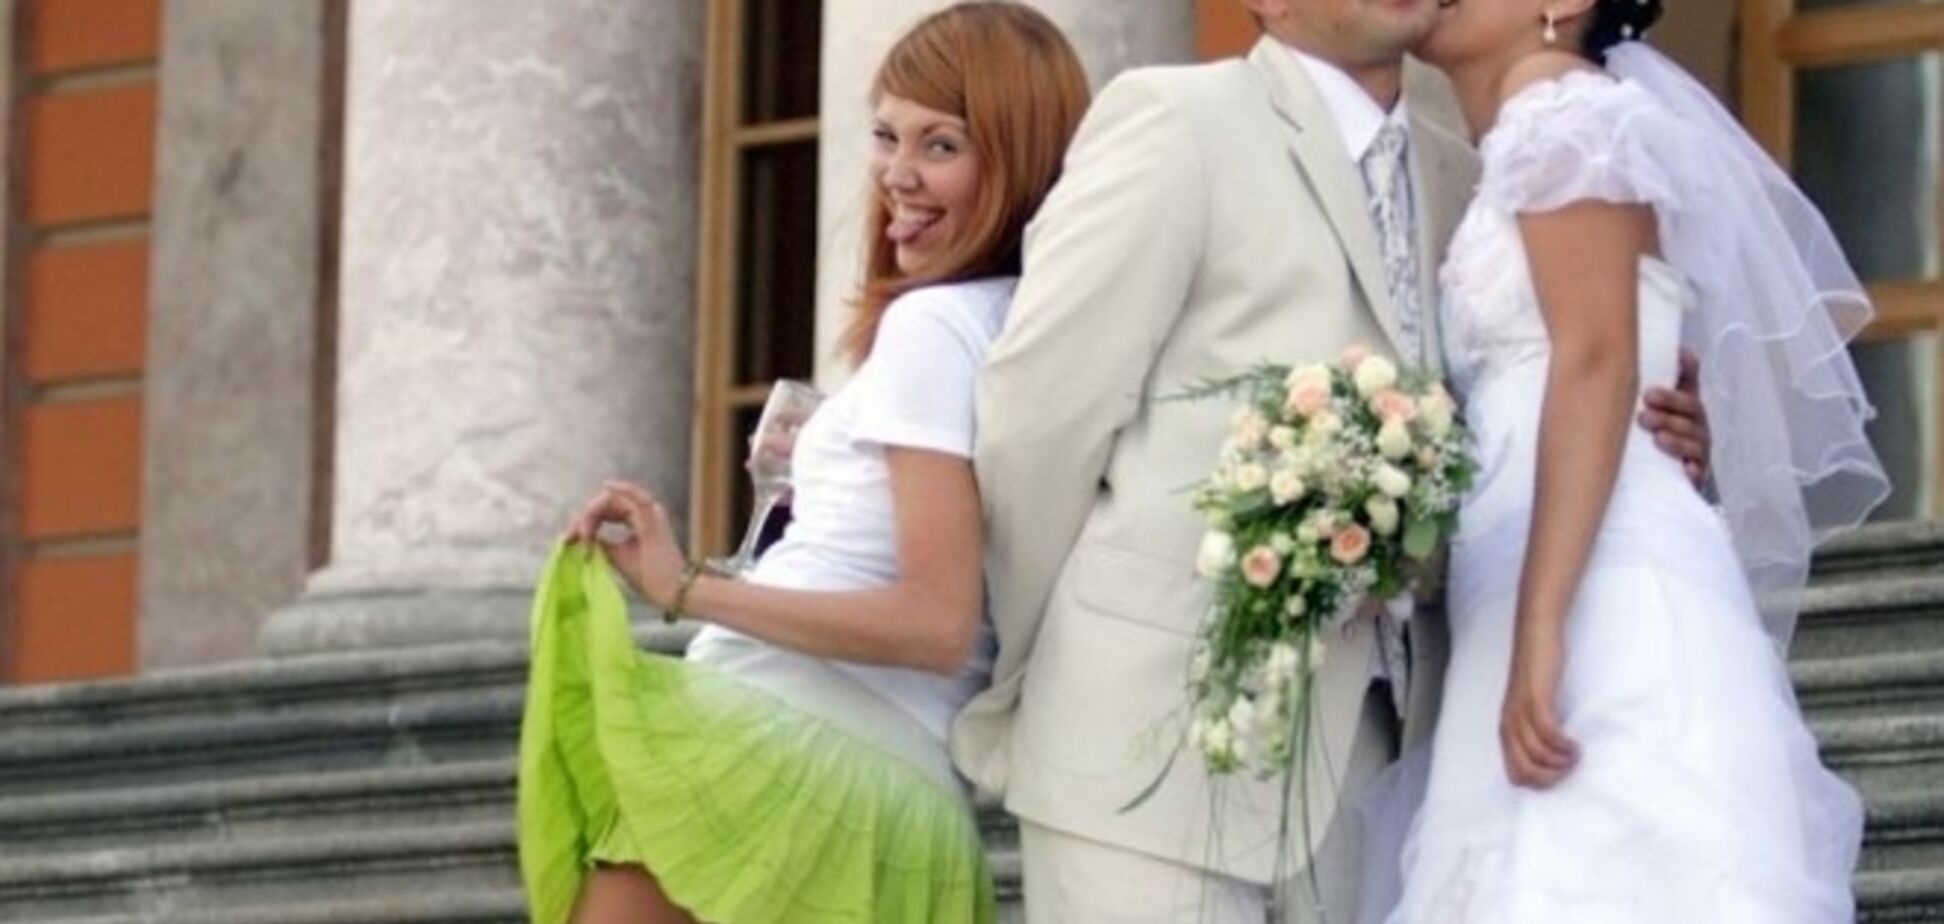 Если подружка невесты совсем без комплексов. Фото с московской свадьбы